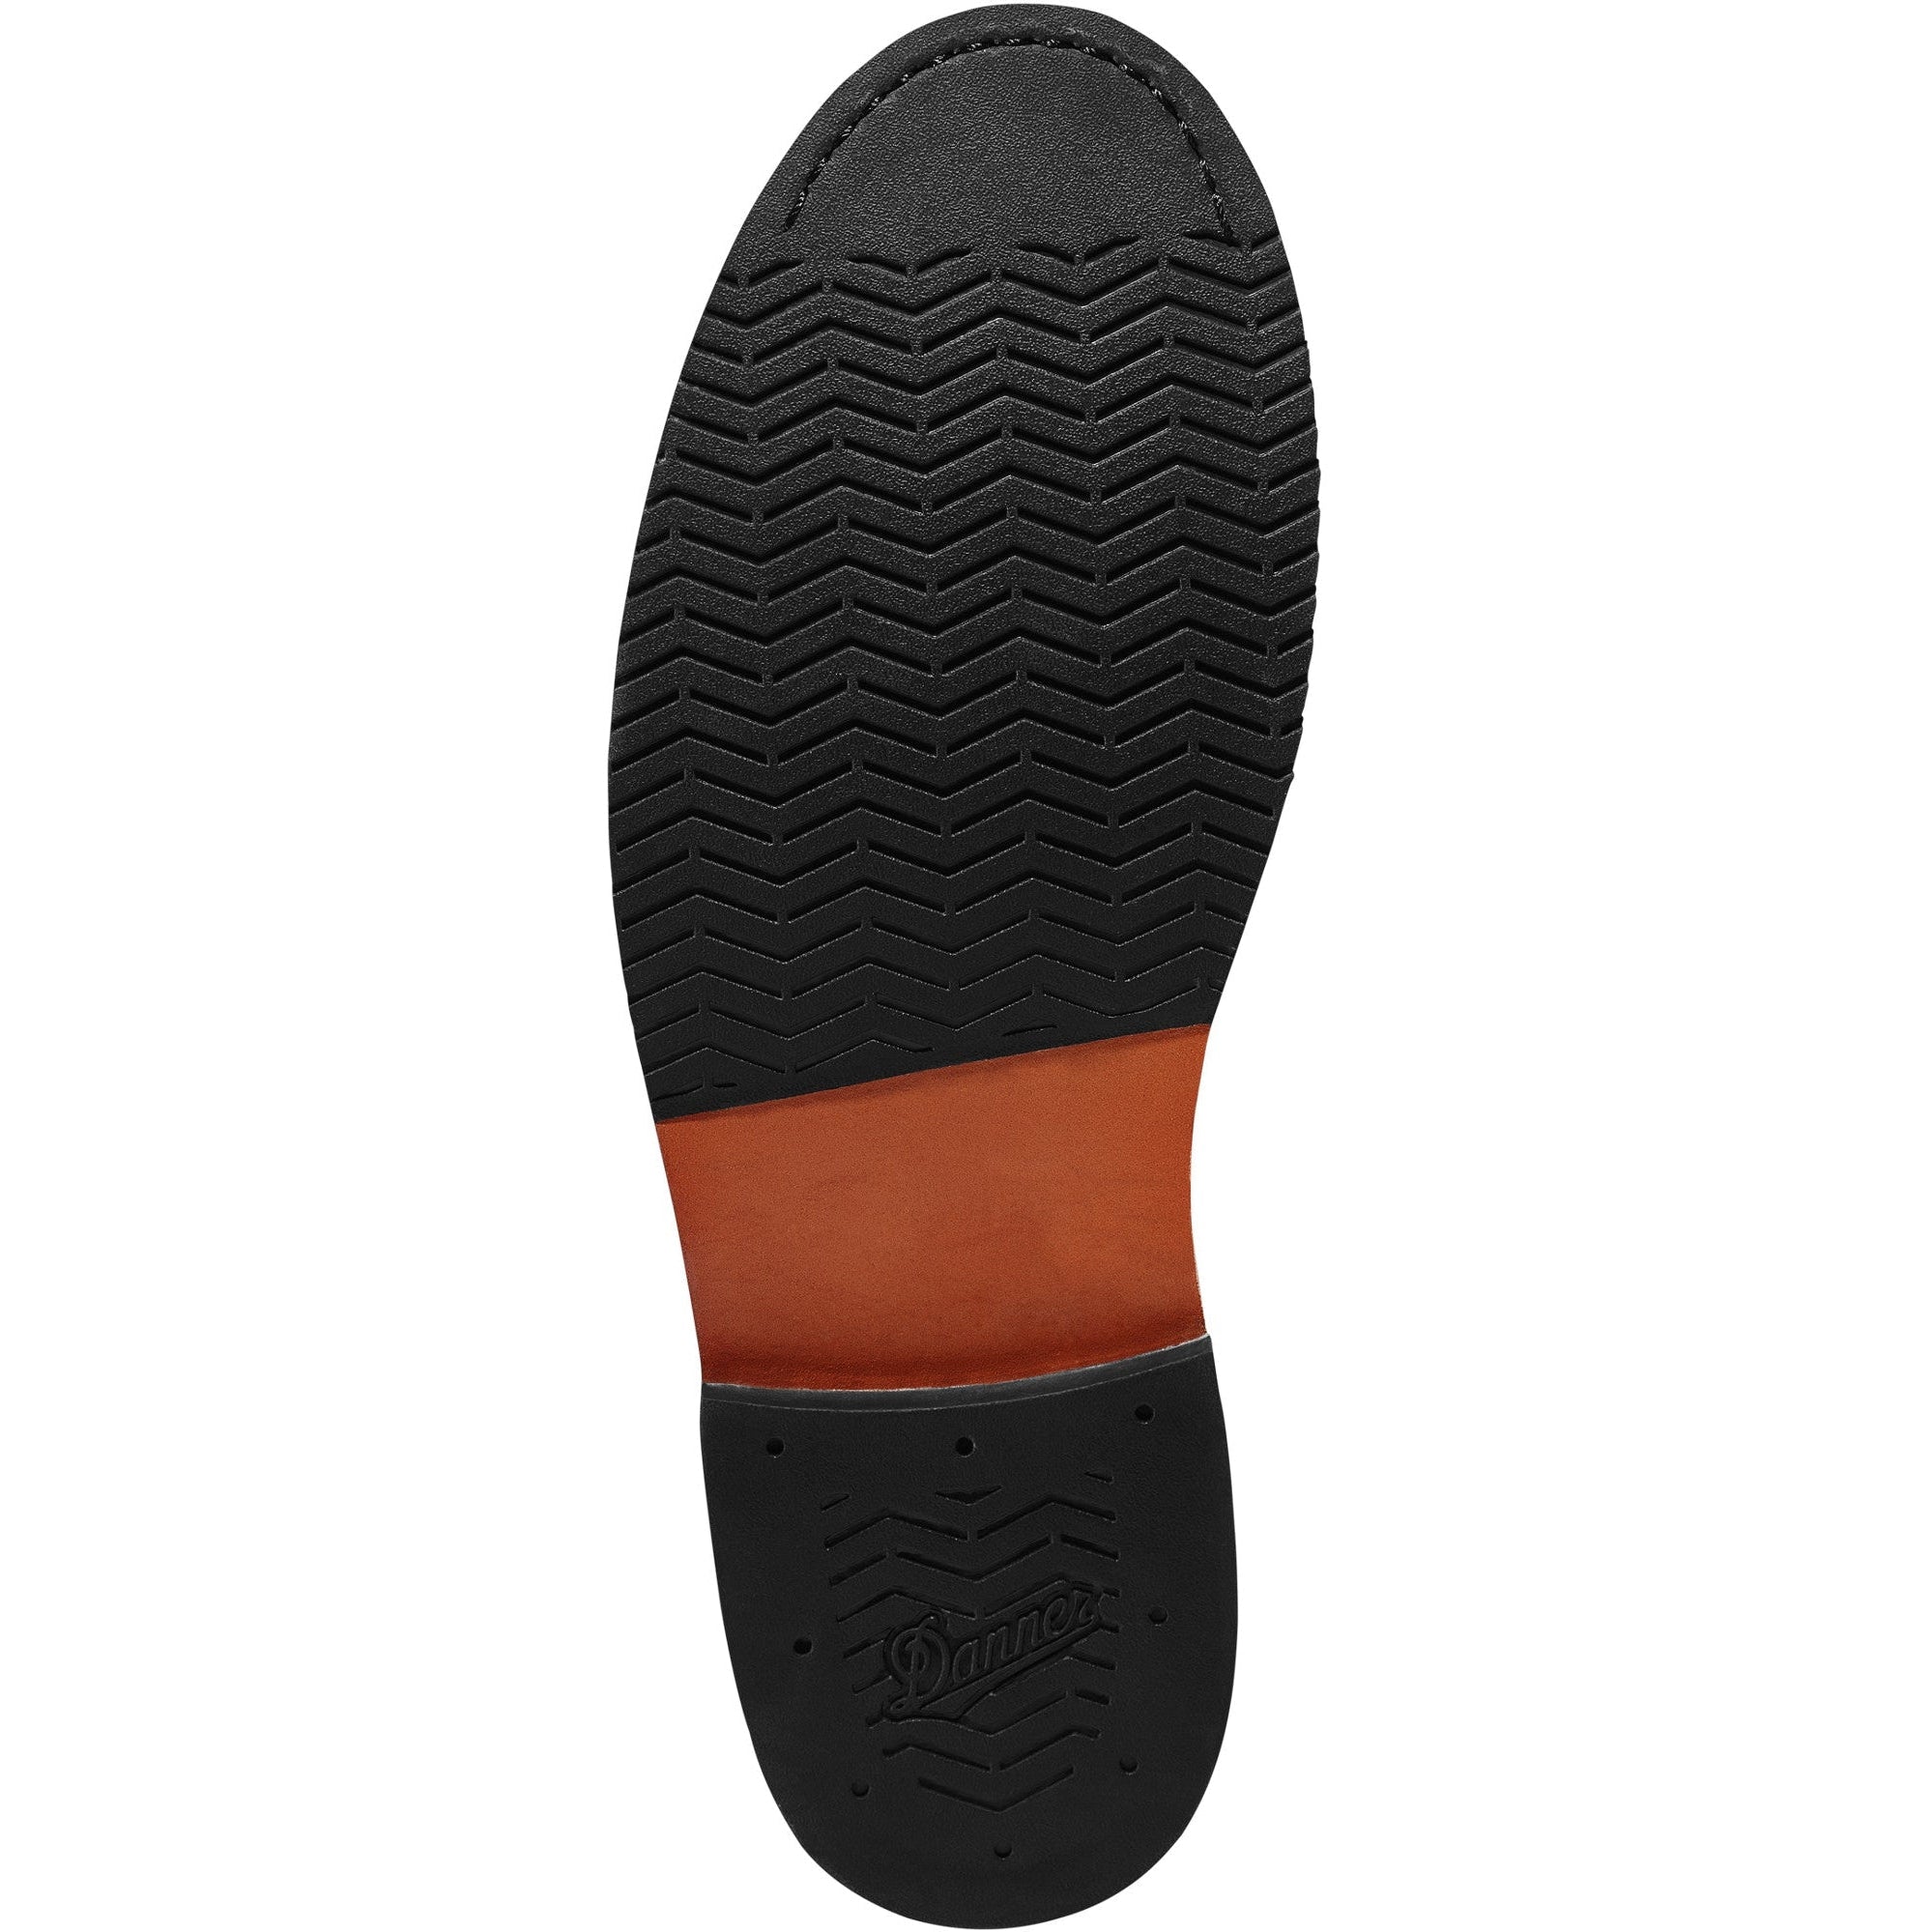 Danner Men's Danner Jack II 4.5" Lifestyle Leather Shoe - Black - 34340  - Overlook Boots